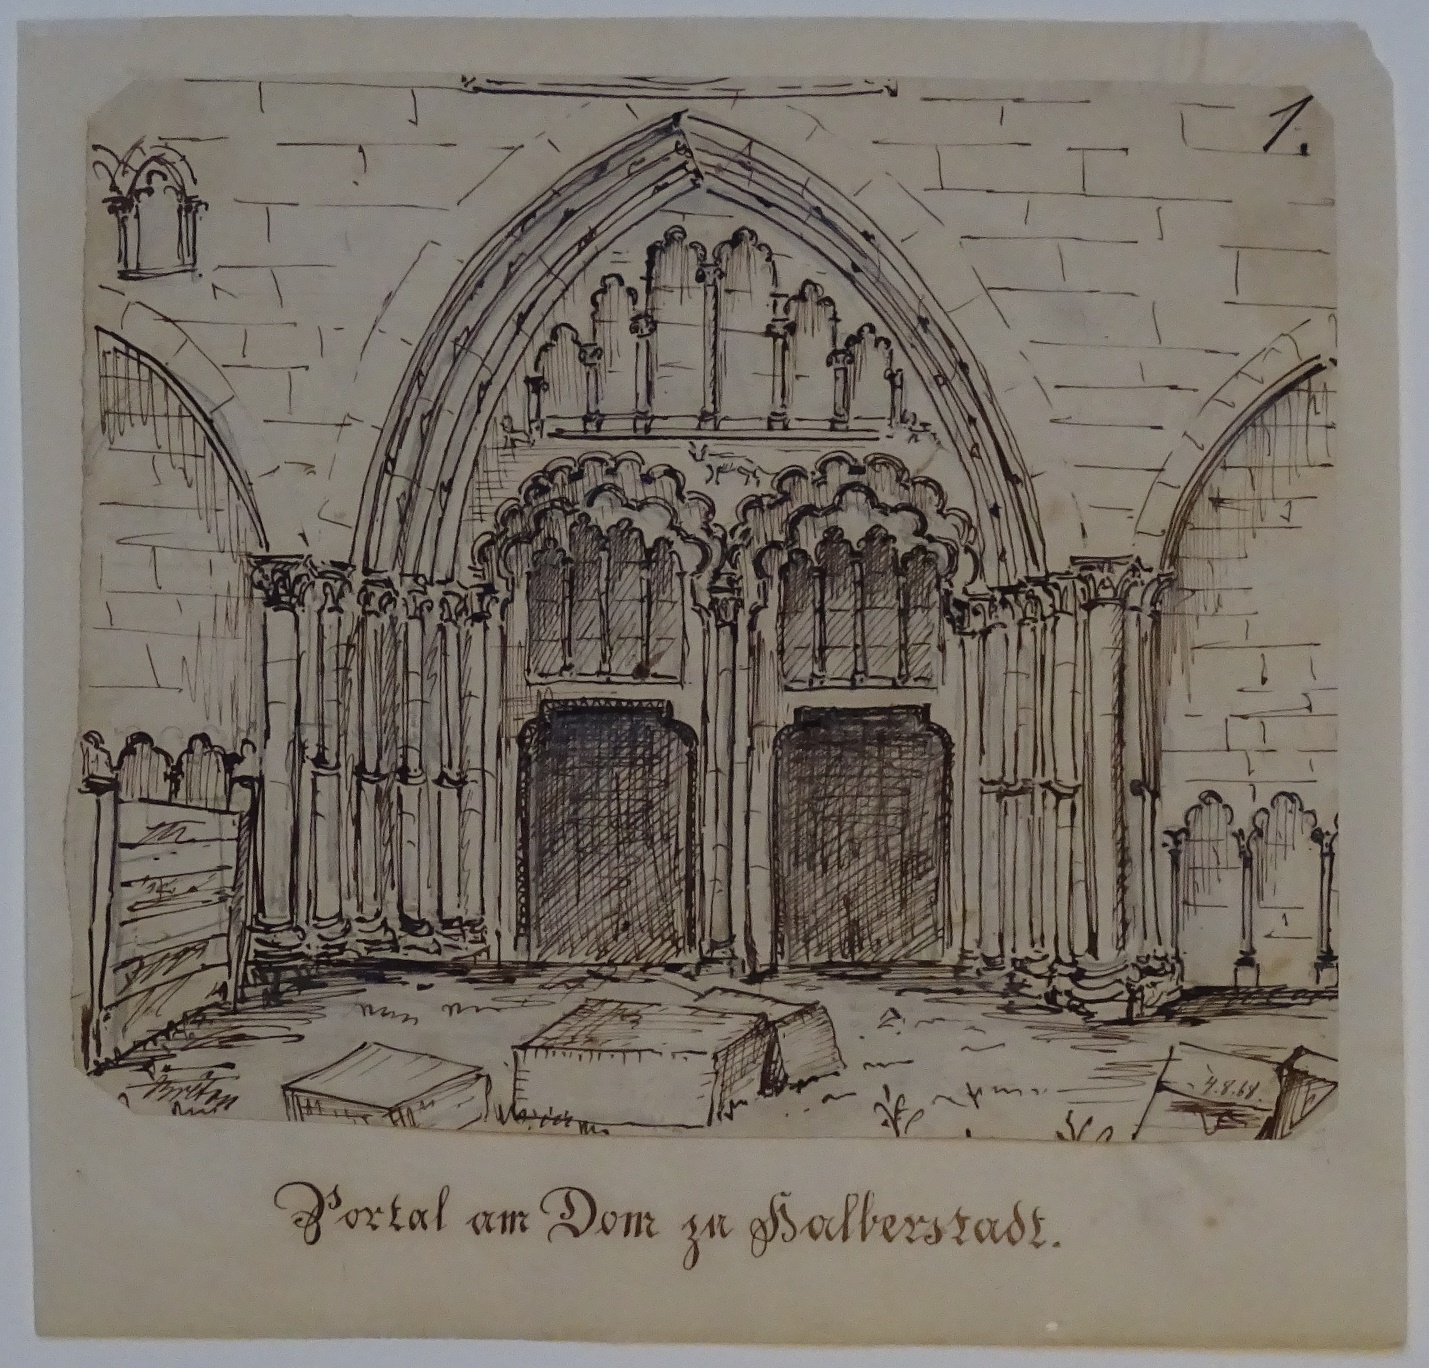 Halberstadt: Westportal am Dom, gezeichnet von Breton, am 4. August 1868 (Schloß Wernigerode GmbH RR-F)